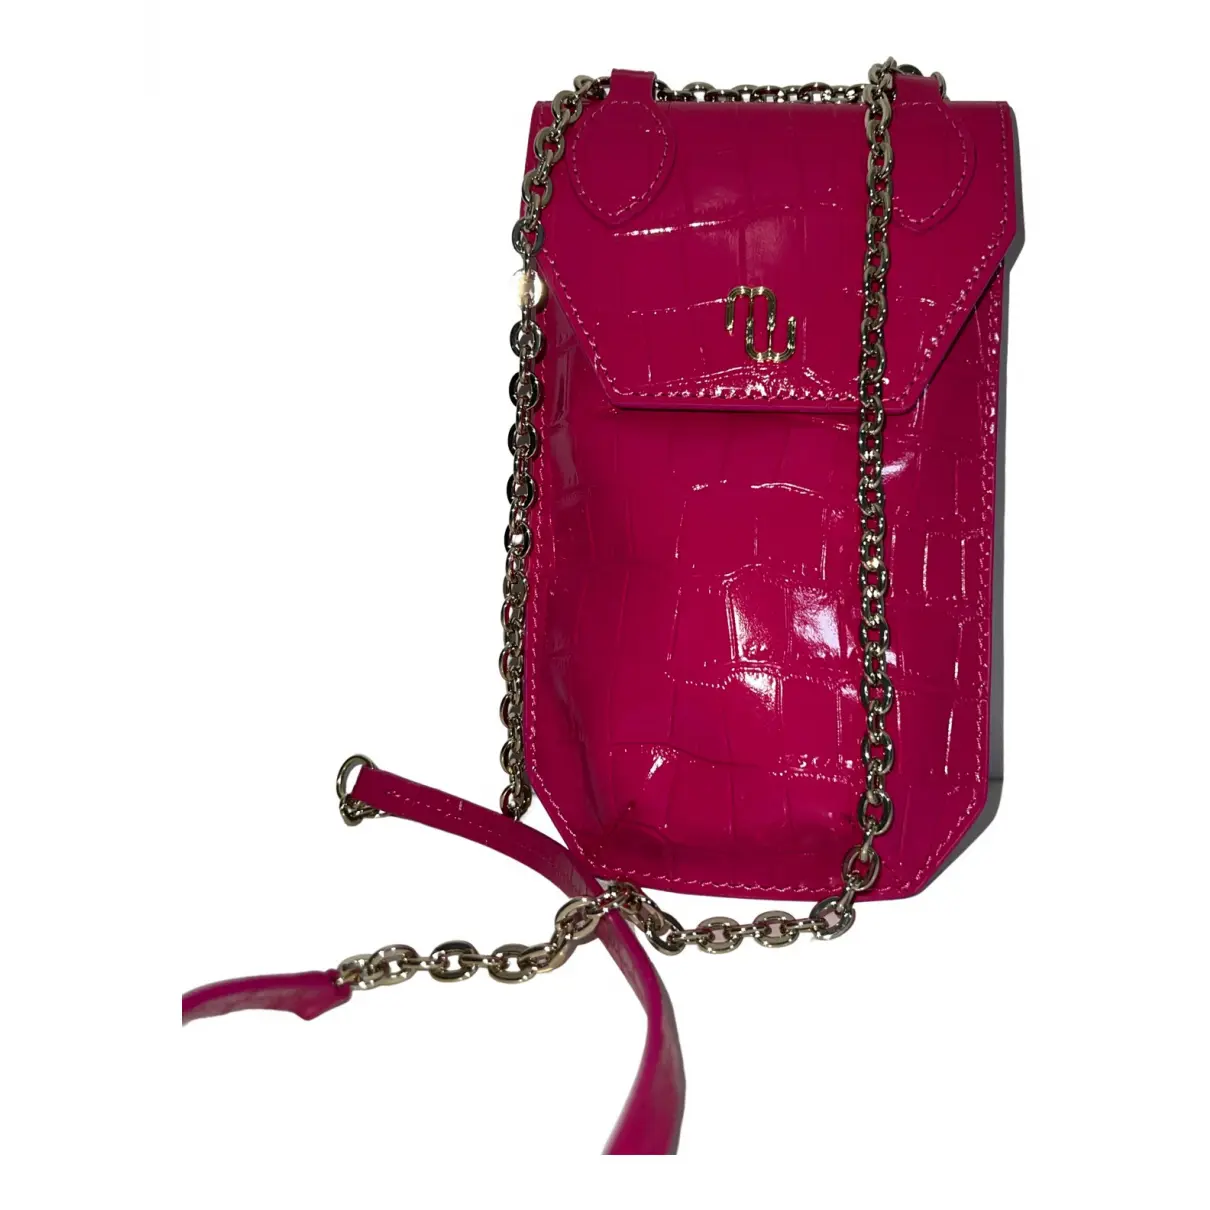 Leather handbag Maje